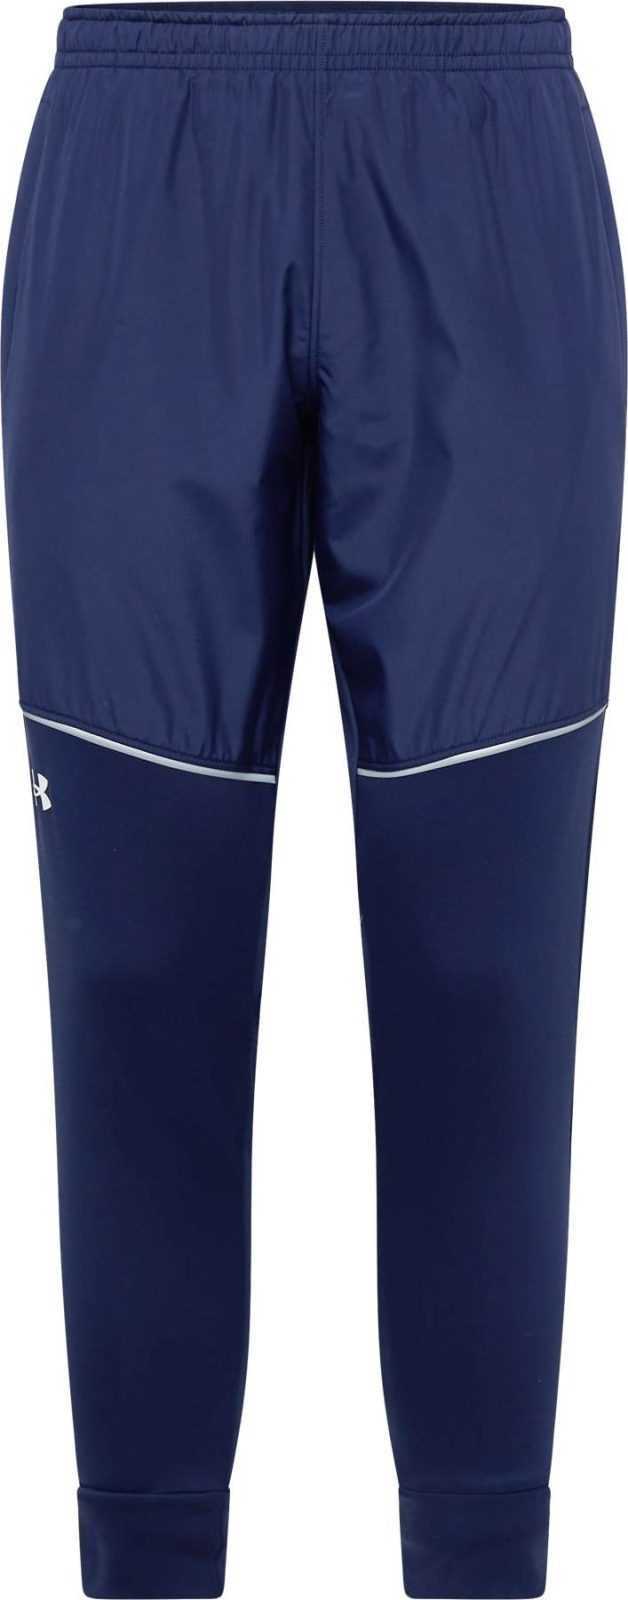 UNDER ARMOUR Sportovní kalhoty 'Af Storm' tmavě modrá / bílá